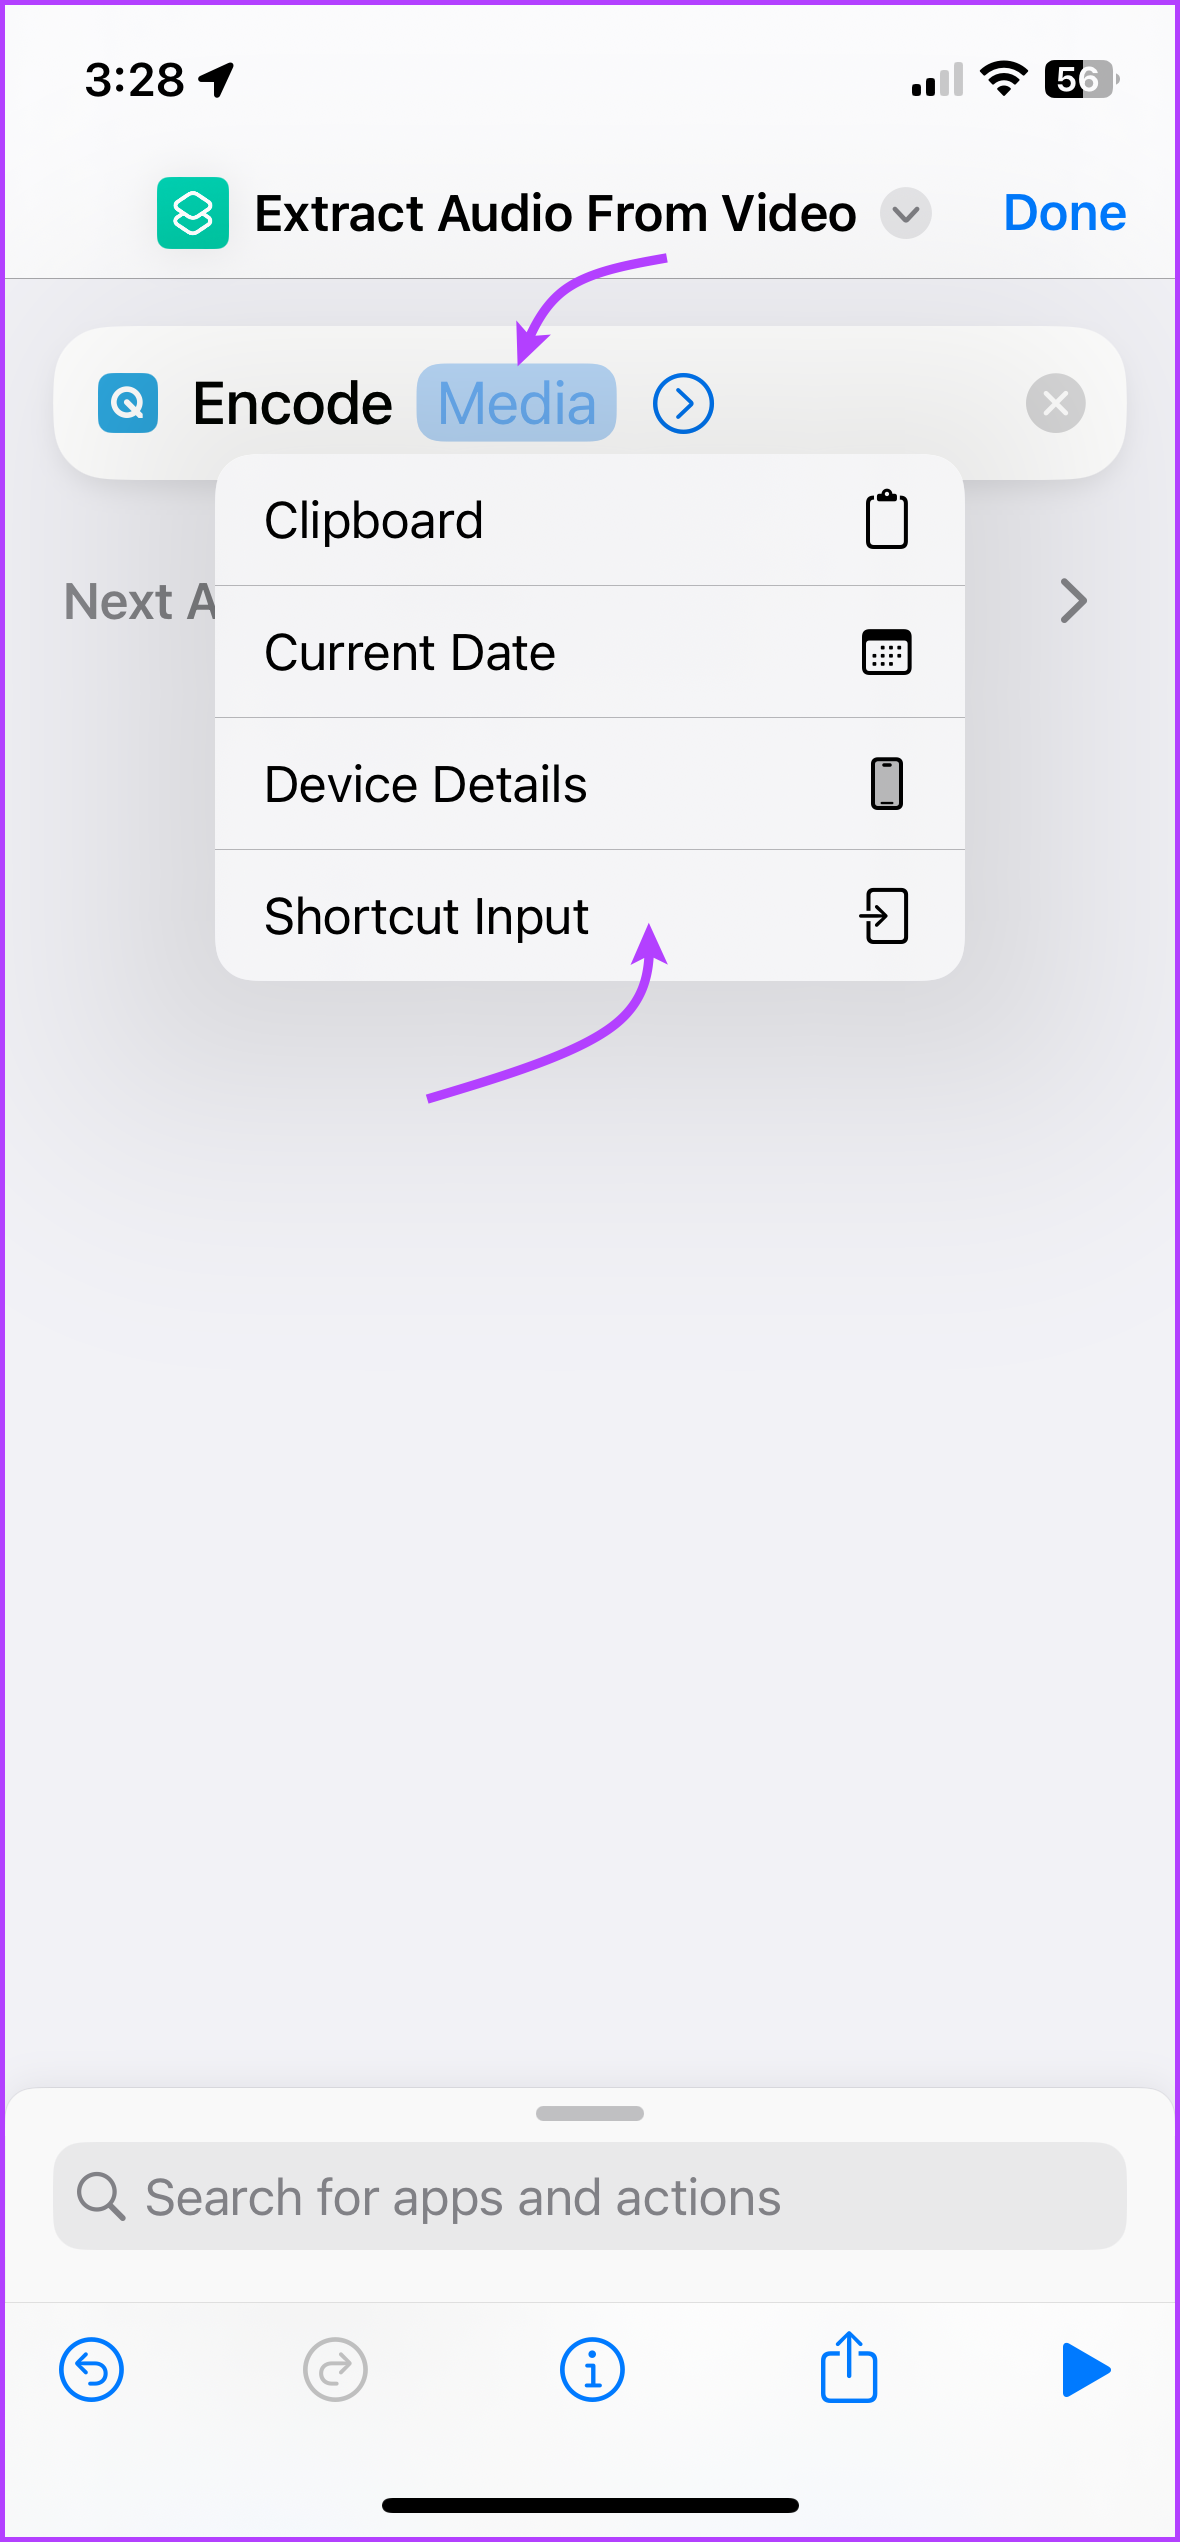 Select Shortcut Input